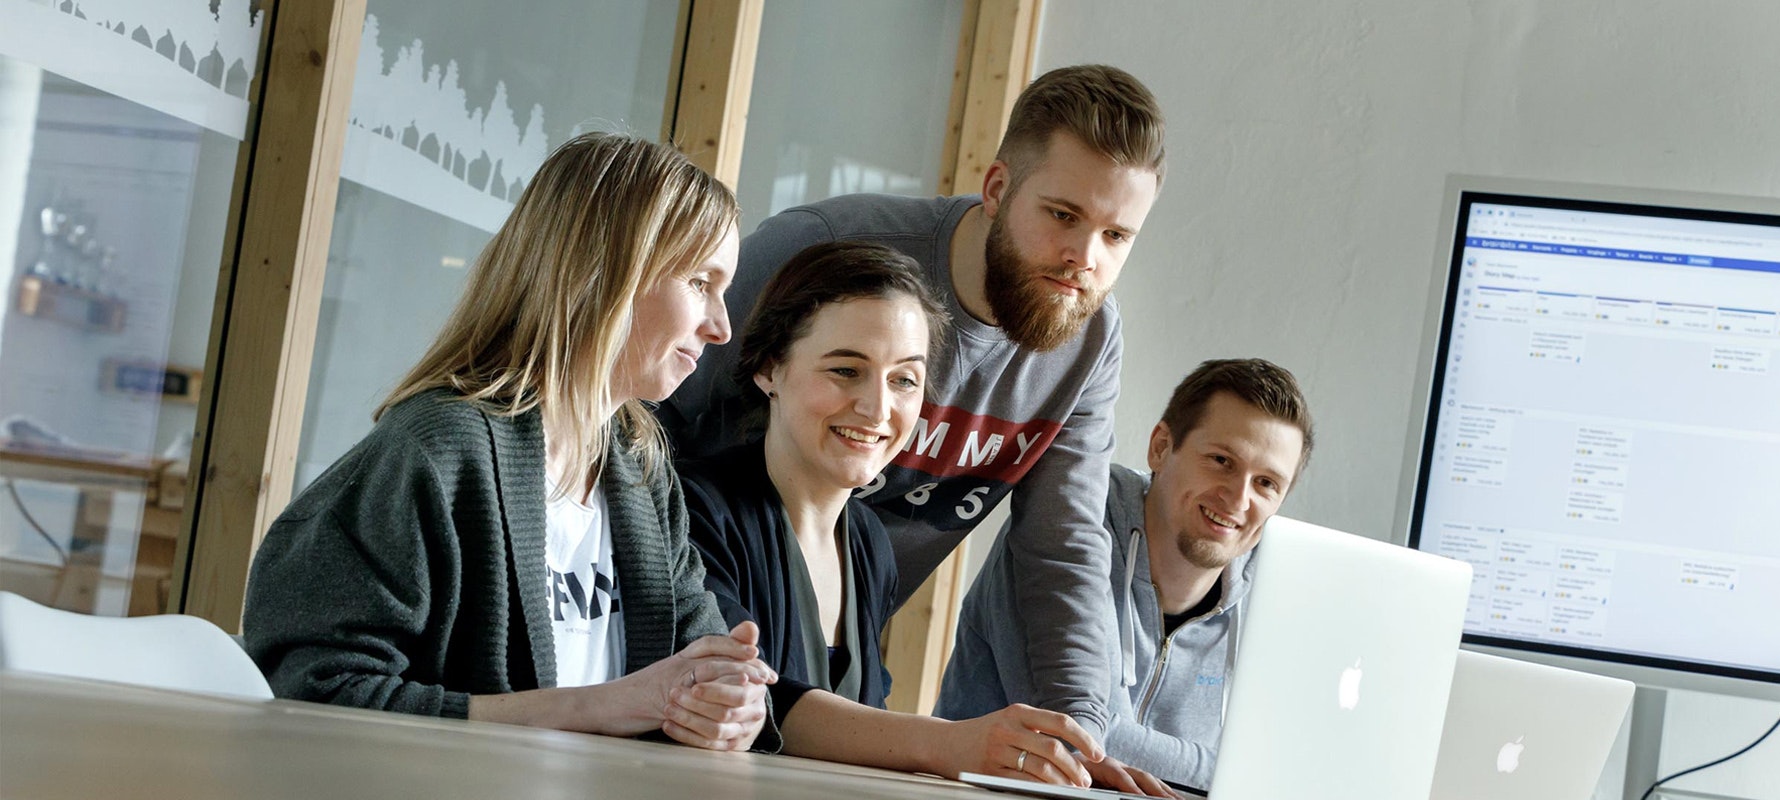 Vier Mitarbeitende von brainbits sitzen im Konferenzraum und schauen gemeinsam und lächelnd auf den Bildschirm eines Laptops.